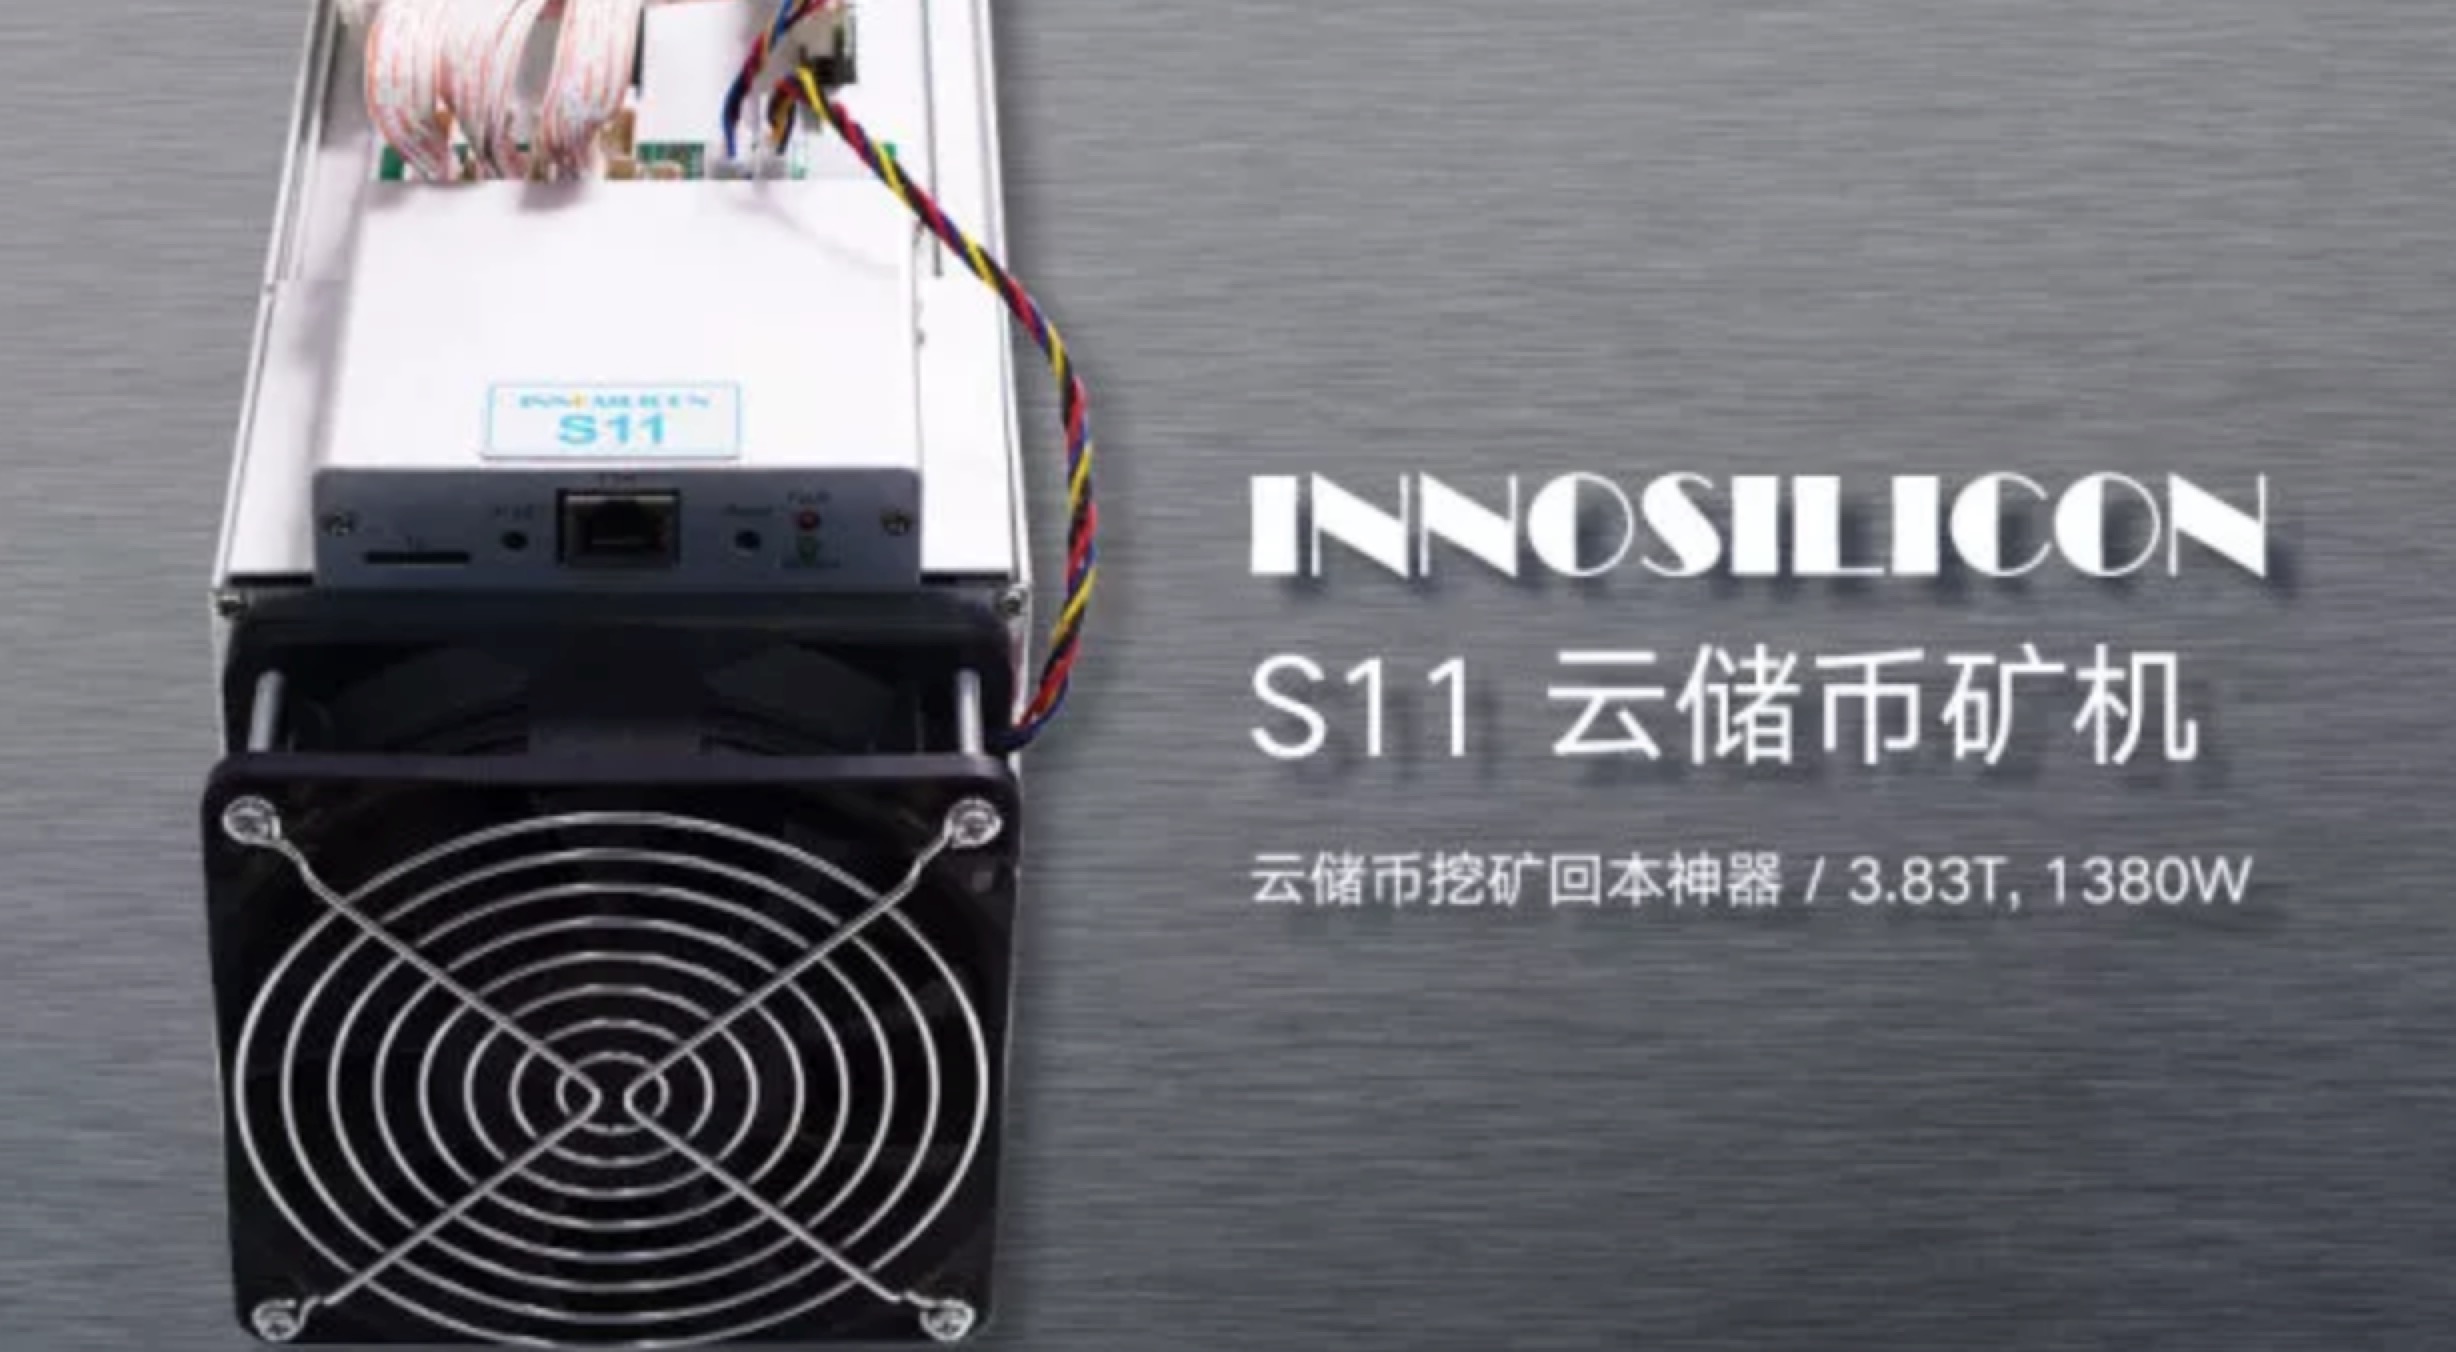 Innosilicon S11 云储币矿机使用说明书